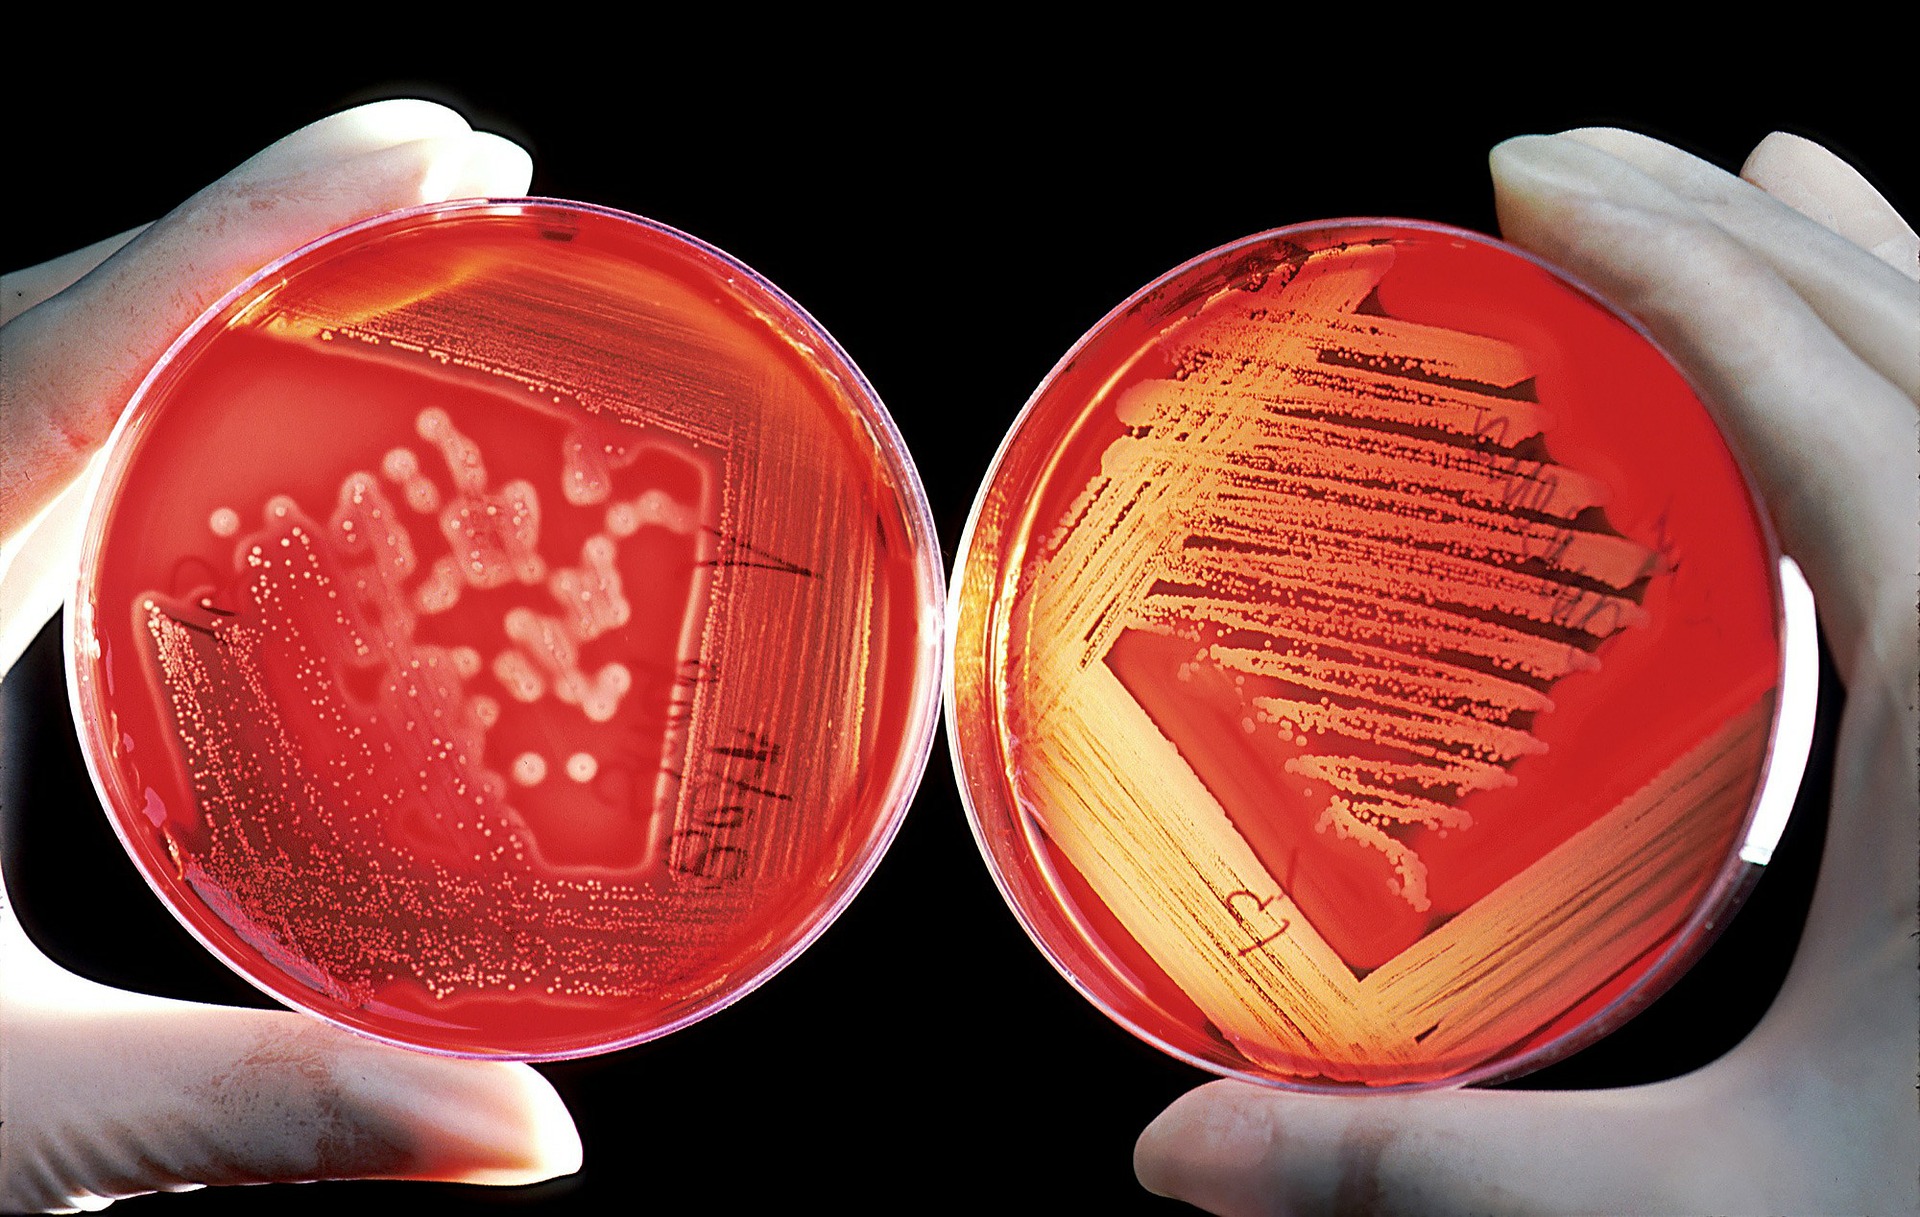 Crecimiento en cultivos de bacterias y otra microbiota intestinal.